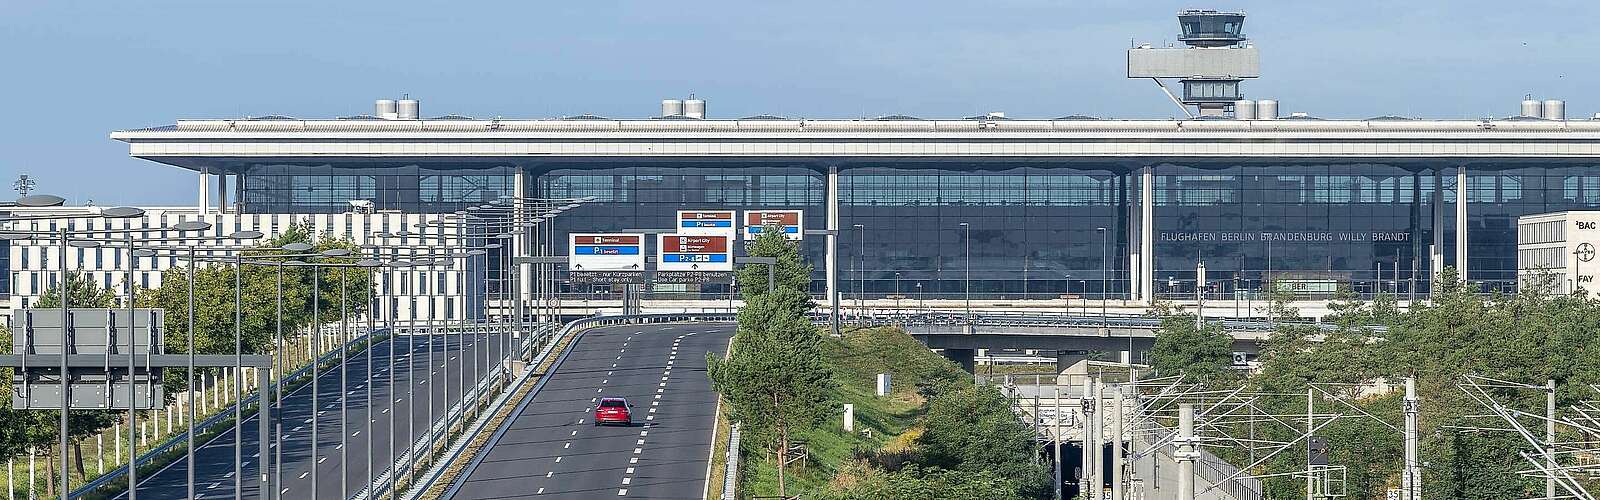 BER Flughafen,
        
    

        Foto: Fotograf / Lizenz - Media Import/Flughafen Berlin Brandenburg GmbH